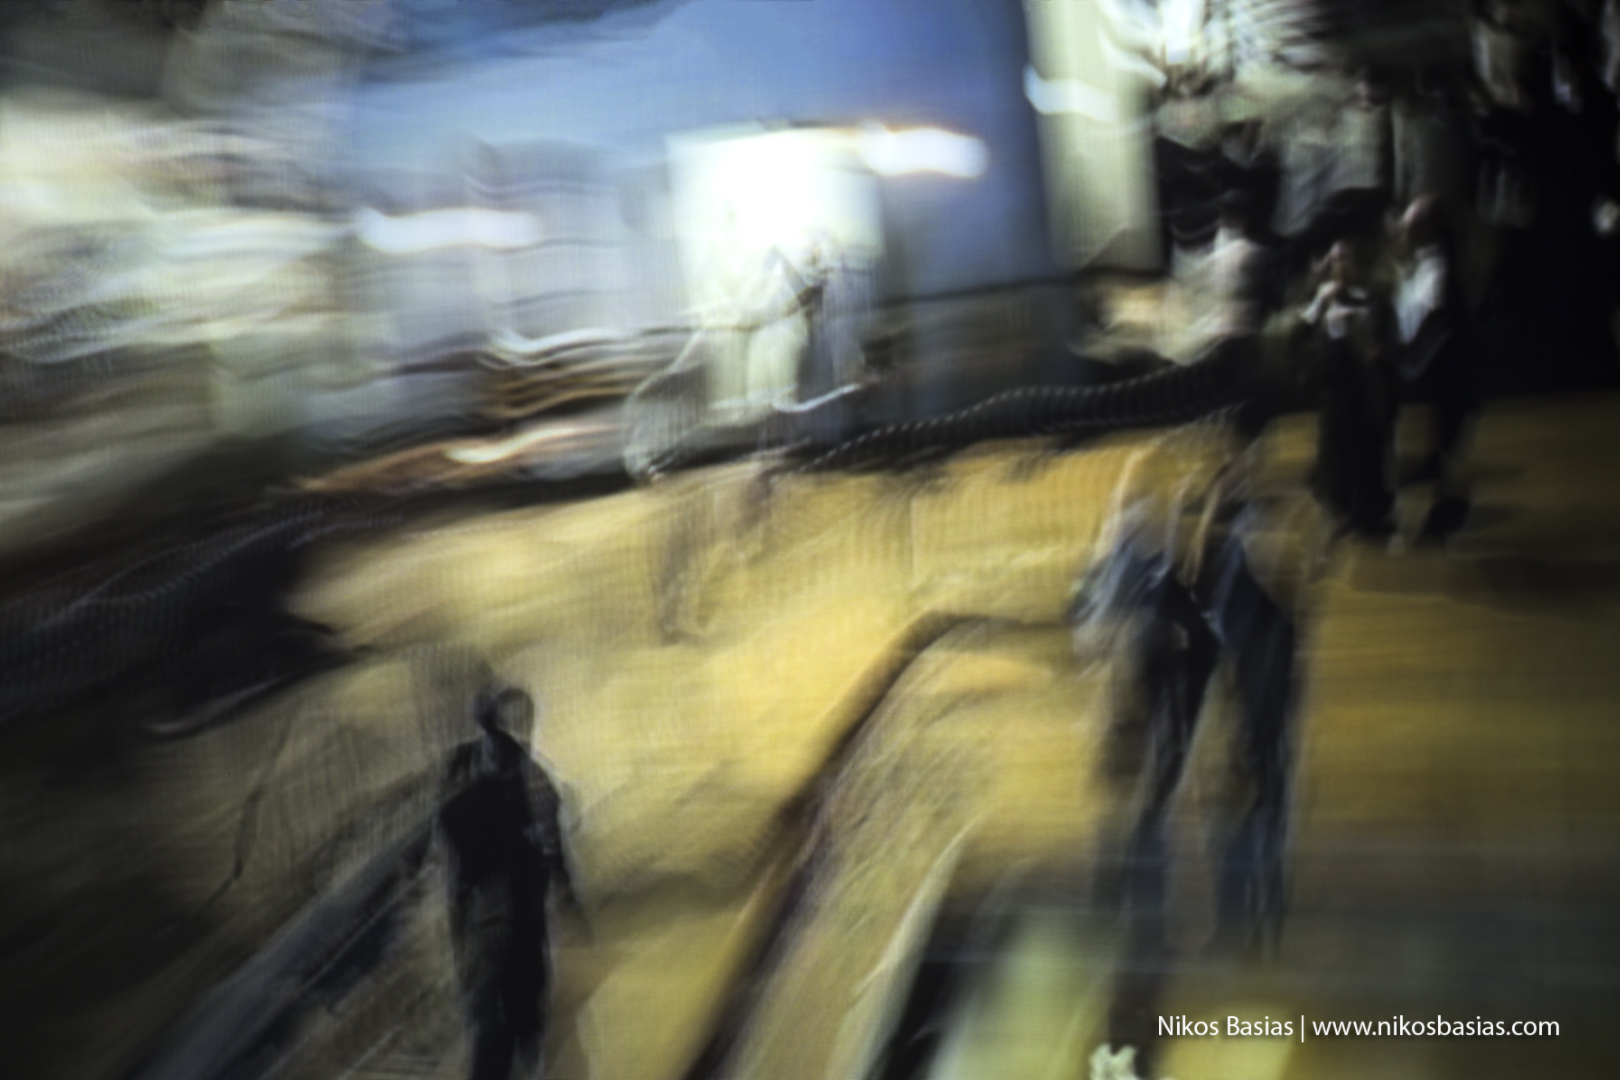 Εγκαινιάζεται η ατομική έκθεση του Χανιώτη φωτογράφου Νίκου Μπασιά